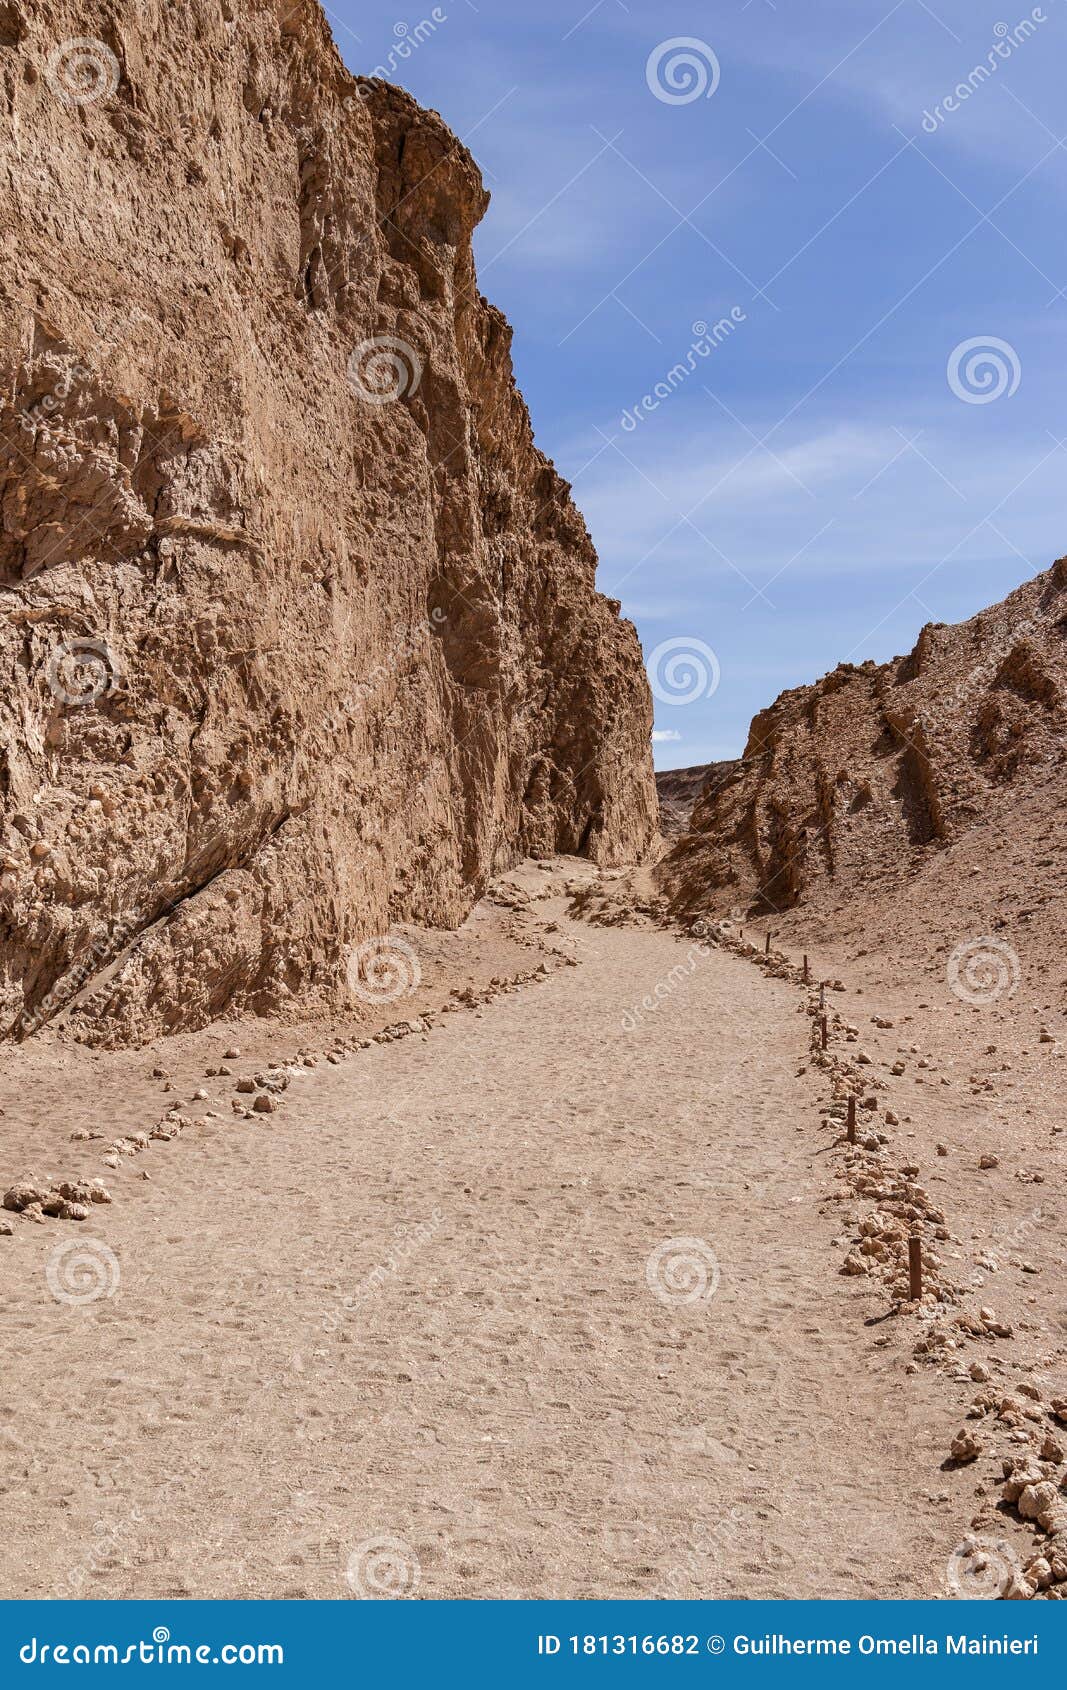 Caminho no deserto